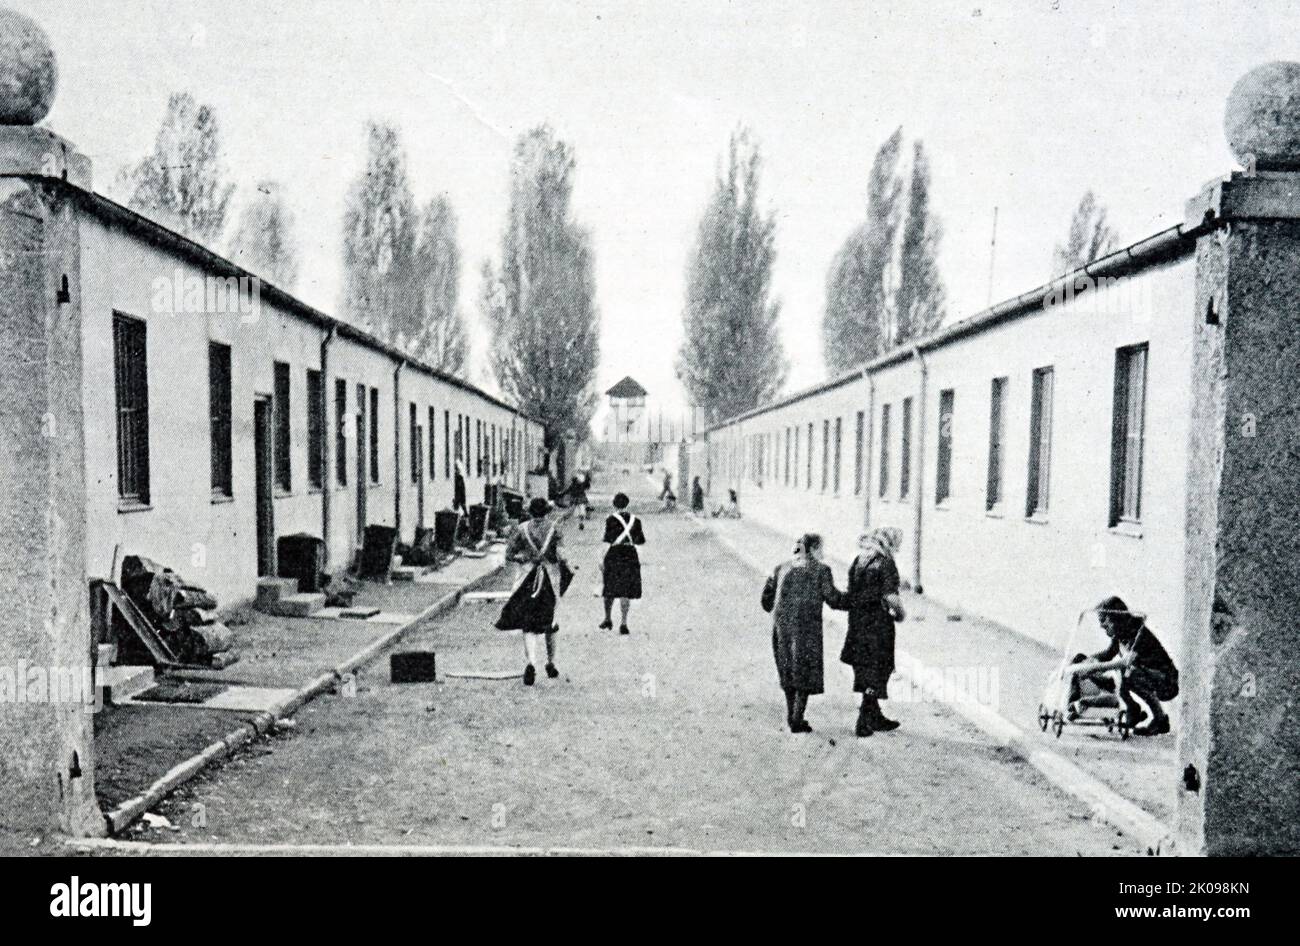 Rifugiati nell'ex campo di concentramento di Dachau. Dachau era un campo di concentramento nazista aperto il 22 marzo 1933, che inizialmente era destinato a tenere prigionieri politici. Si trova a nord-ovest di Monaco, nello stato della Baviera, nella Germania meridionale. Negli anni del dopoguerra, la struttura di Dachau servì per tenere soldati delle SS in attesa di processo. Dopo il 1948, deteneva i tedeschi etnici che erano stati espulsi dall'Europa orientale e che erano in attesa di reinsediamento, e fu utilizzato anche per un certo periodo come base militare degli Stati Uniti durante l'occupazione. È stato infine chiuso nel 1960. Foto Stock